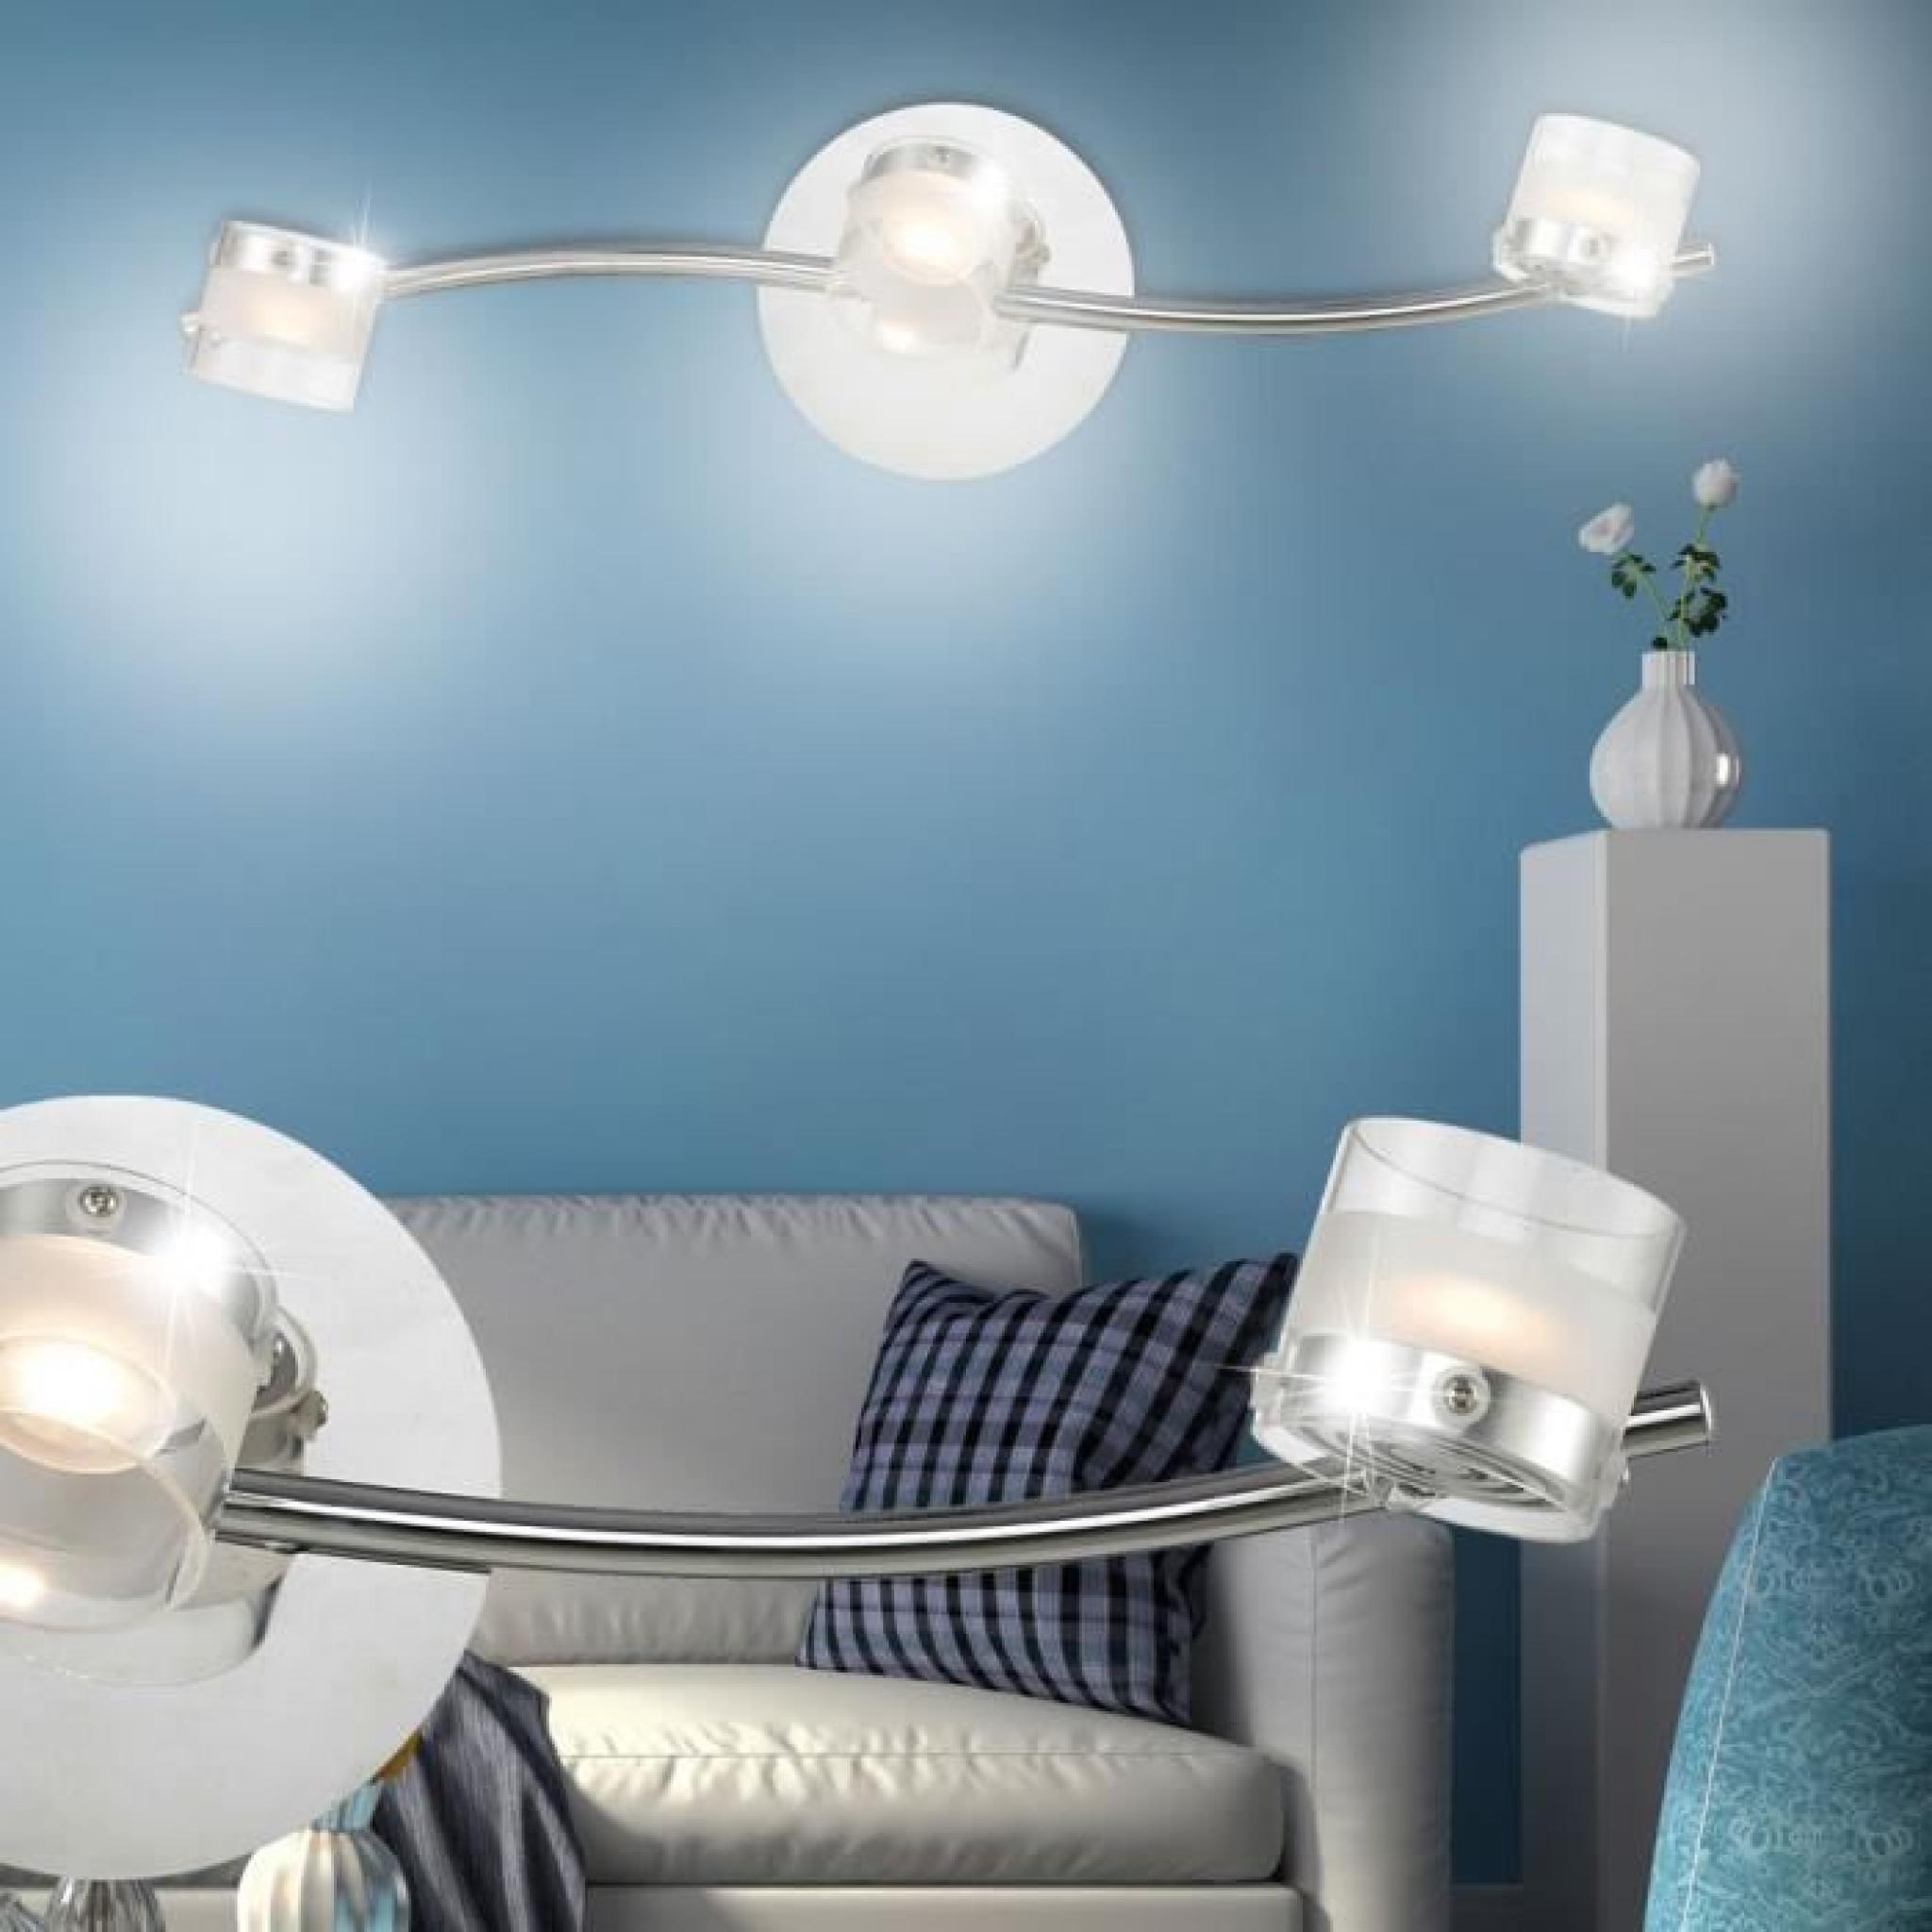 Applique LED COB 9W luminaire mural spots mobiles lampe verre éclairage salle de séjour pas cher